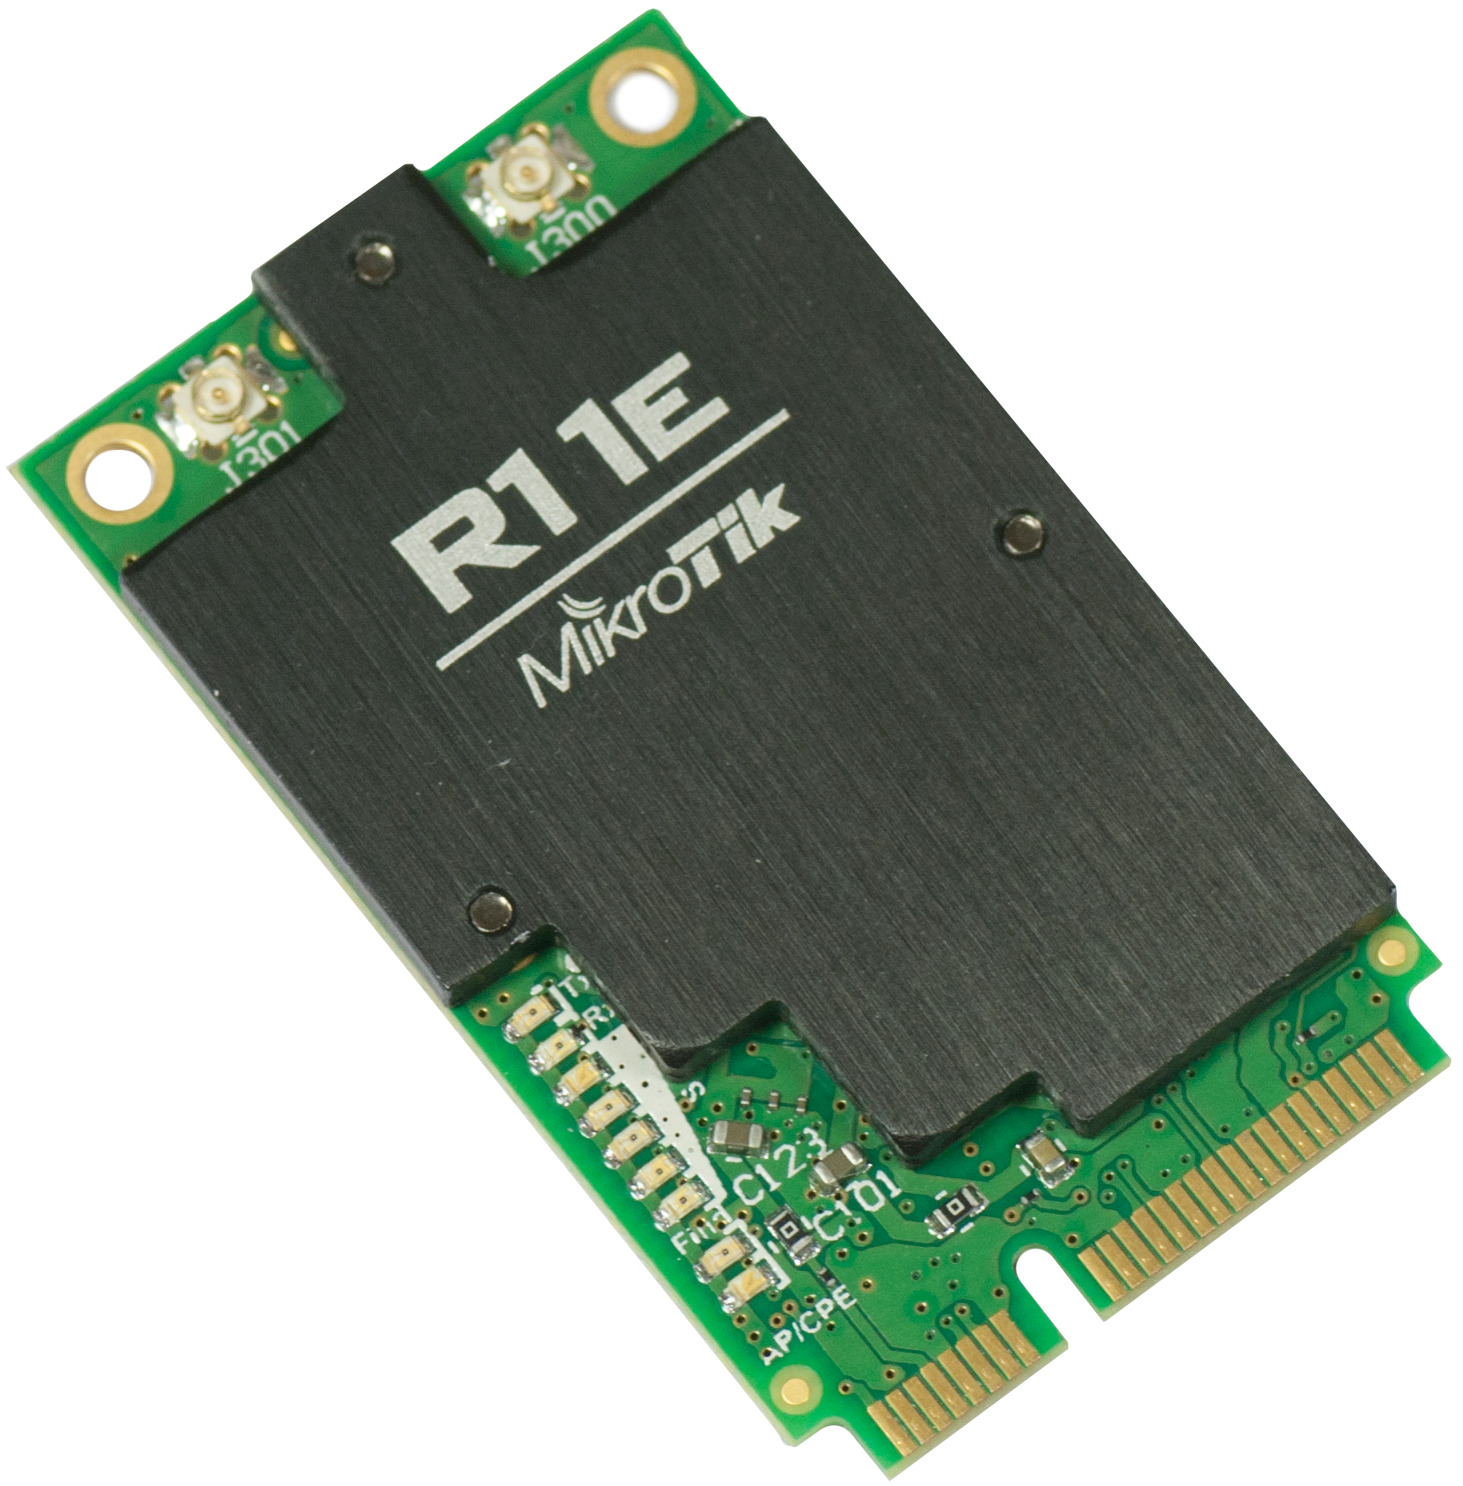 Mikrotik R11e-2HnD 2.4GHz High Power Mini PCI express Wlan Wi-Fi card